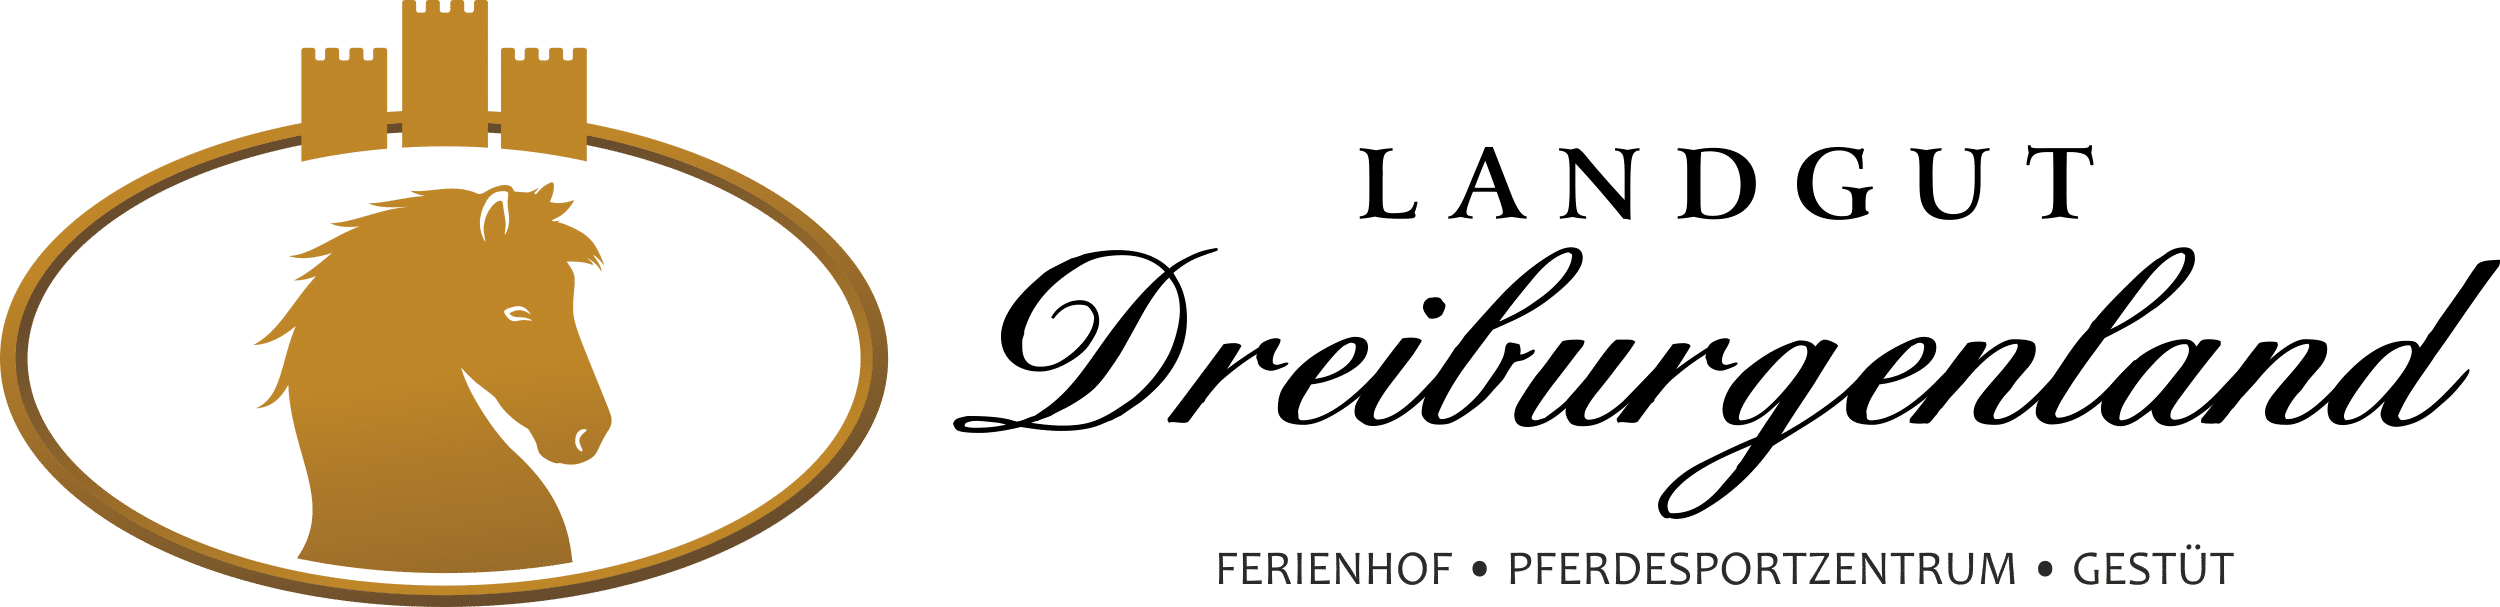 Ferienhof, Pferdesportzentrum und Gestüt "Landgut Dreiburgenland" | Ferienhof Landgut Dreiburgenland